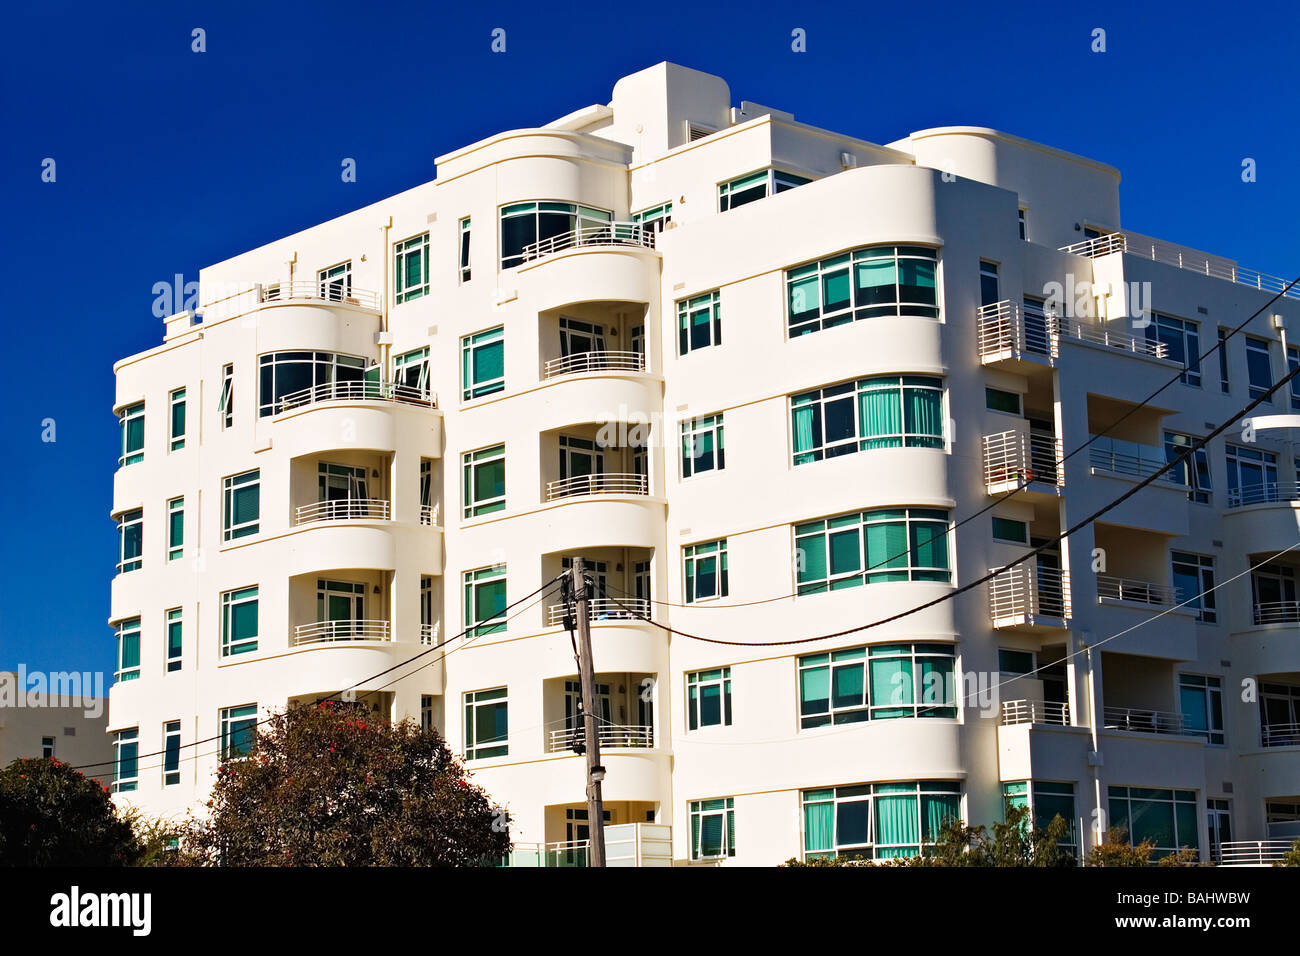 Architettura / moderni appartamenti residenziali.La posizione è il sobborgo di Port Melbourne / Melbourne Victoria Australia. Foto Stock